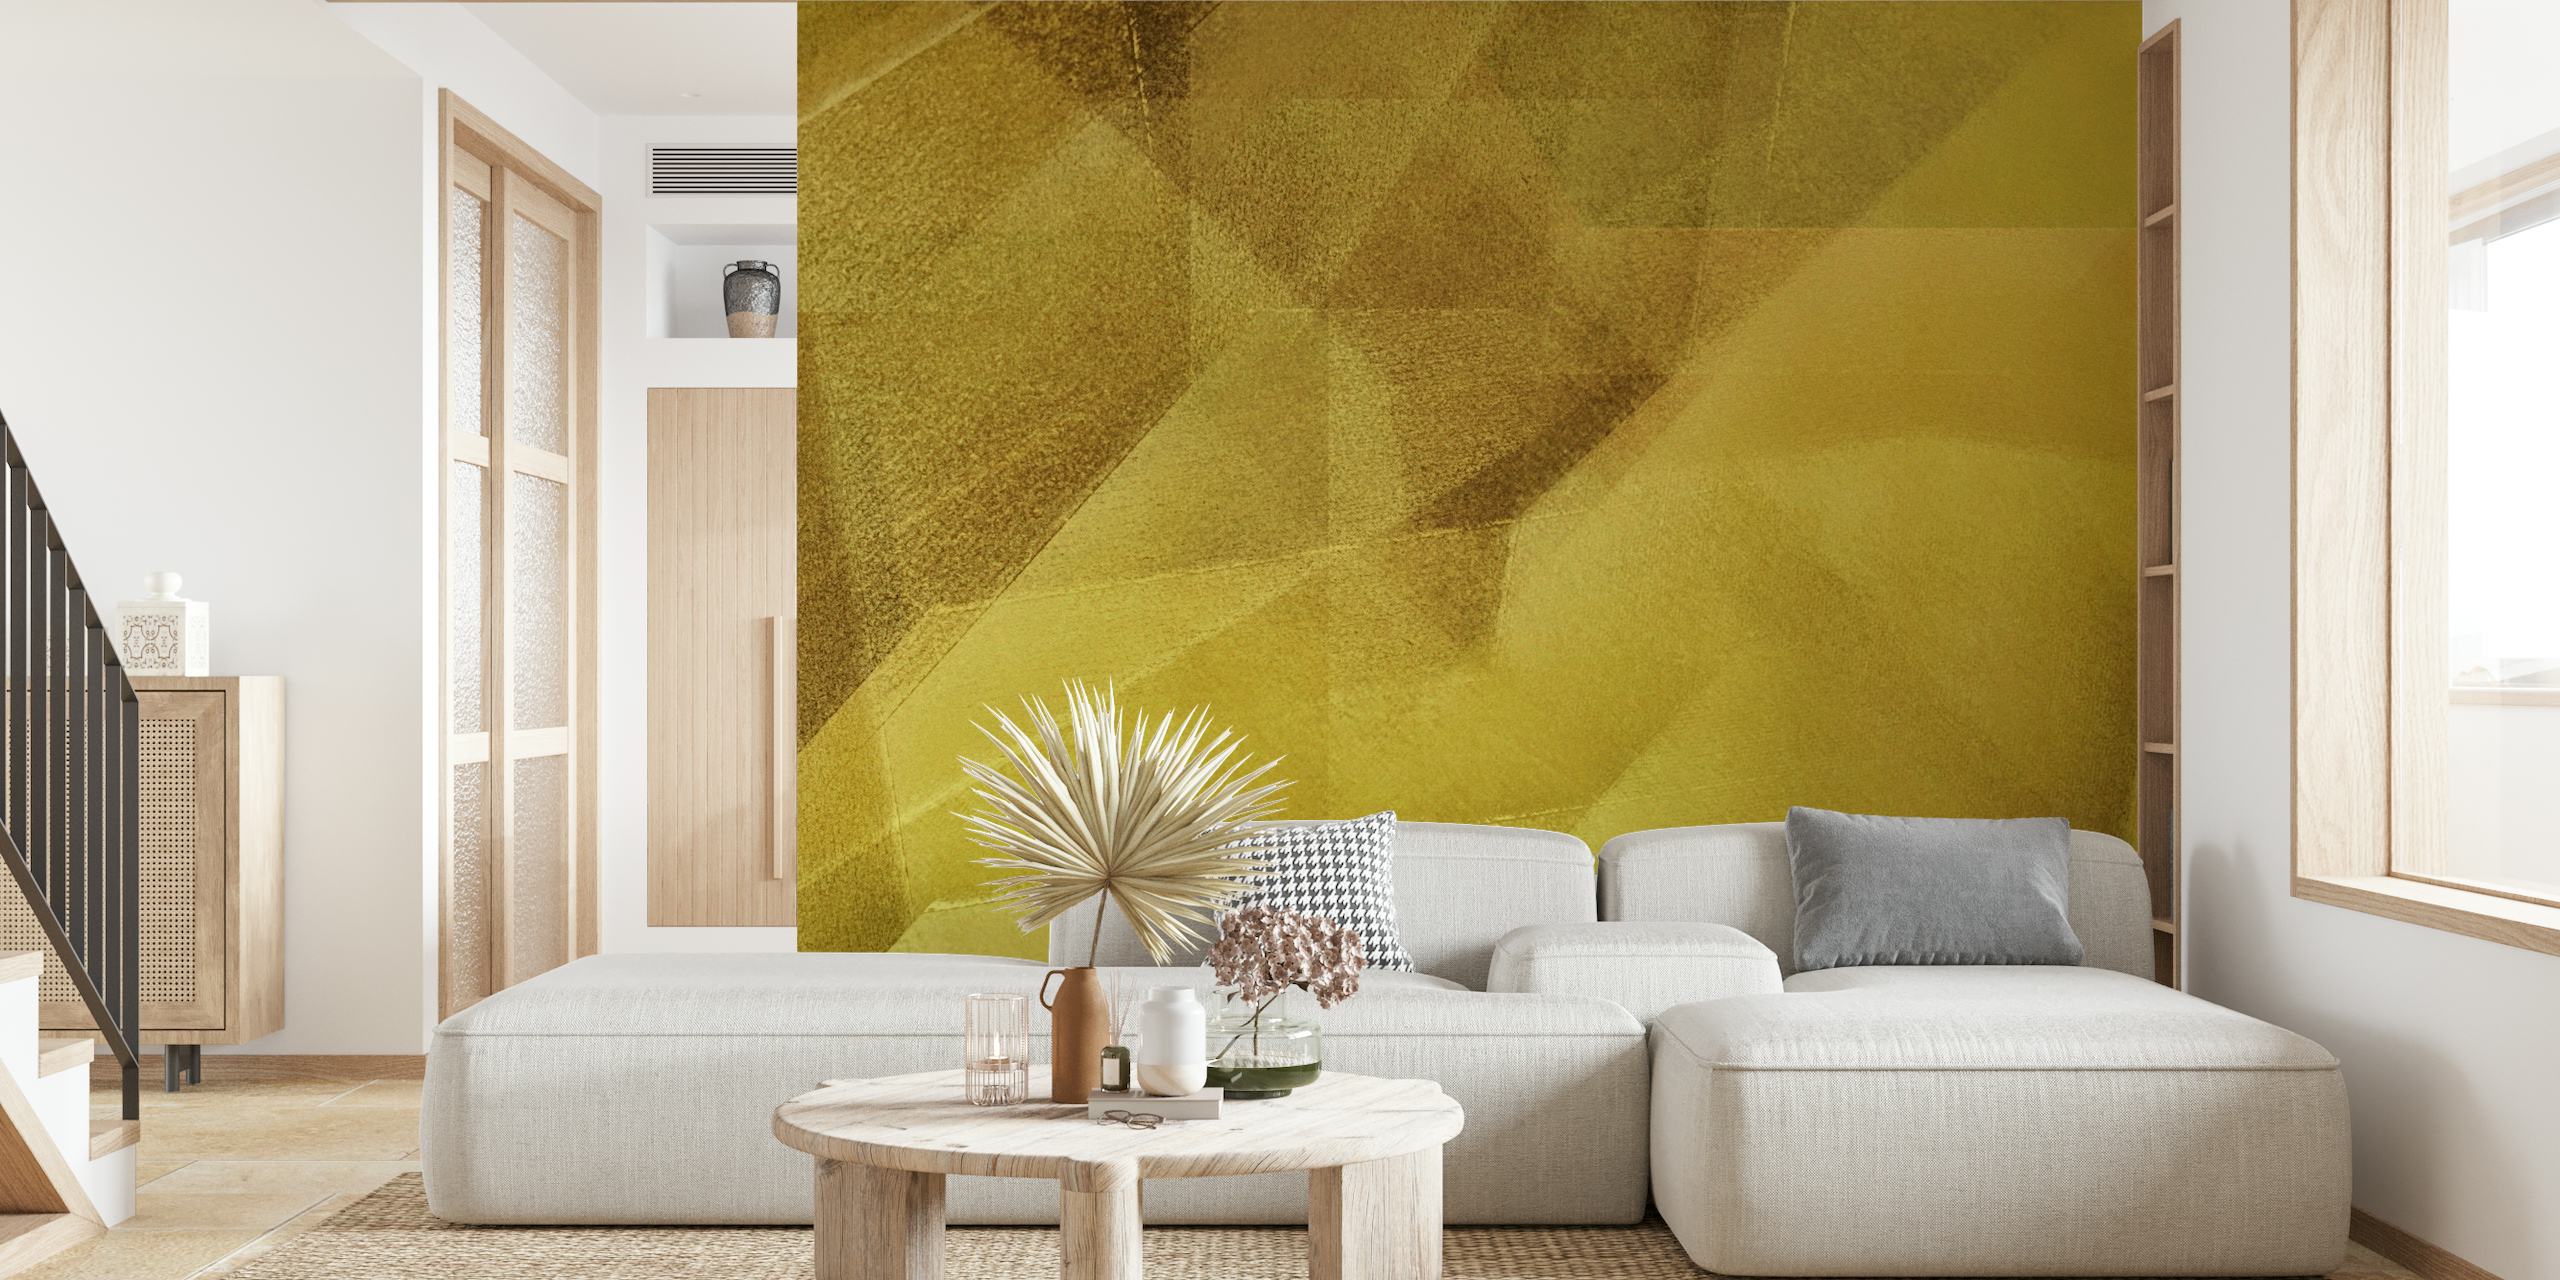 Geometrijska zidna slika u zlatnoj boji s apstraktnim uzorkom za sofisticirani dizajn interijera